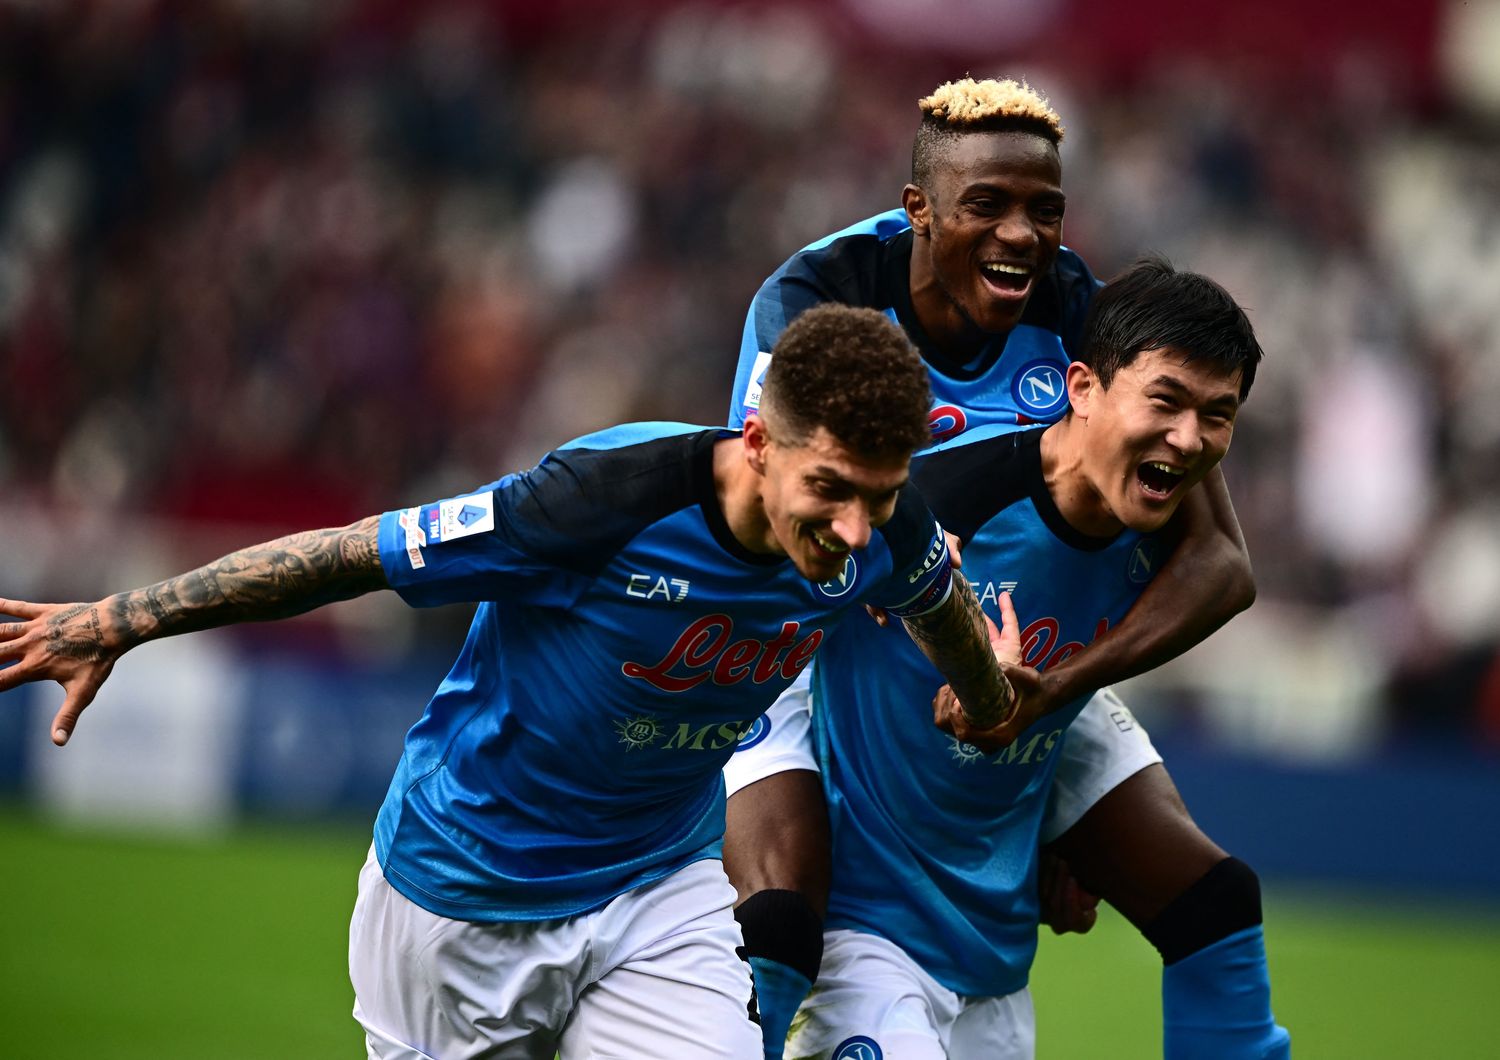 Napoli festeggia dopo un gol al Torino